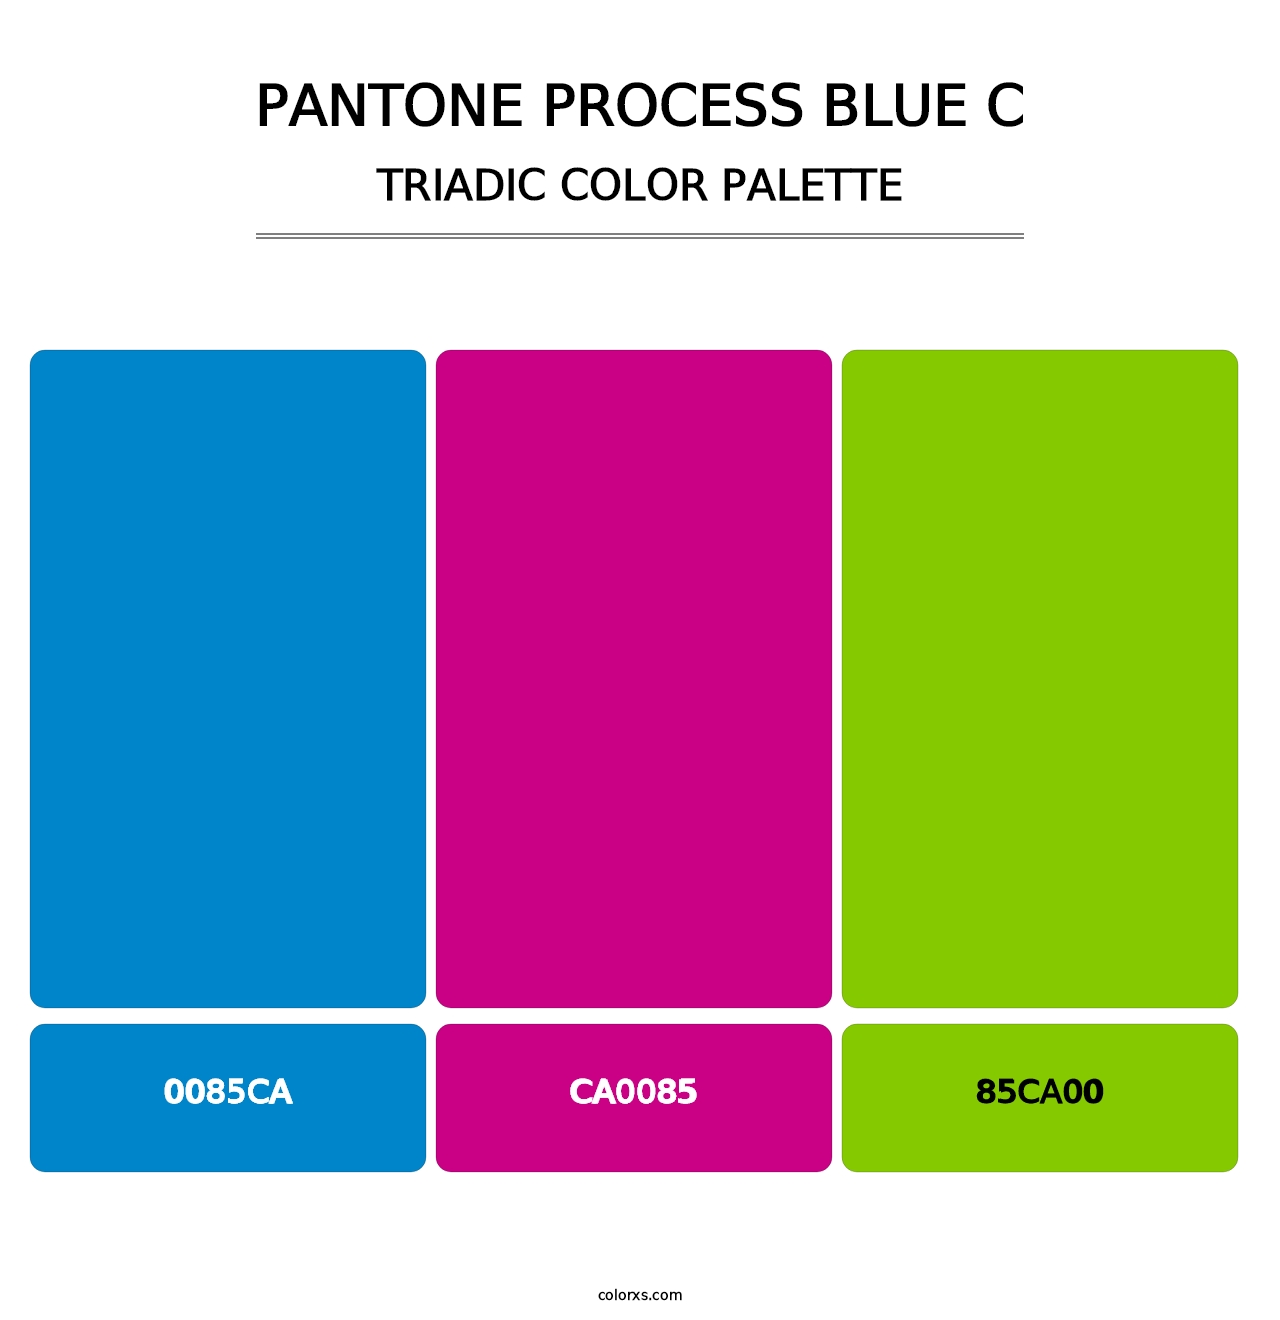 PANTONE Process Blue C - Triadic Color Palette